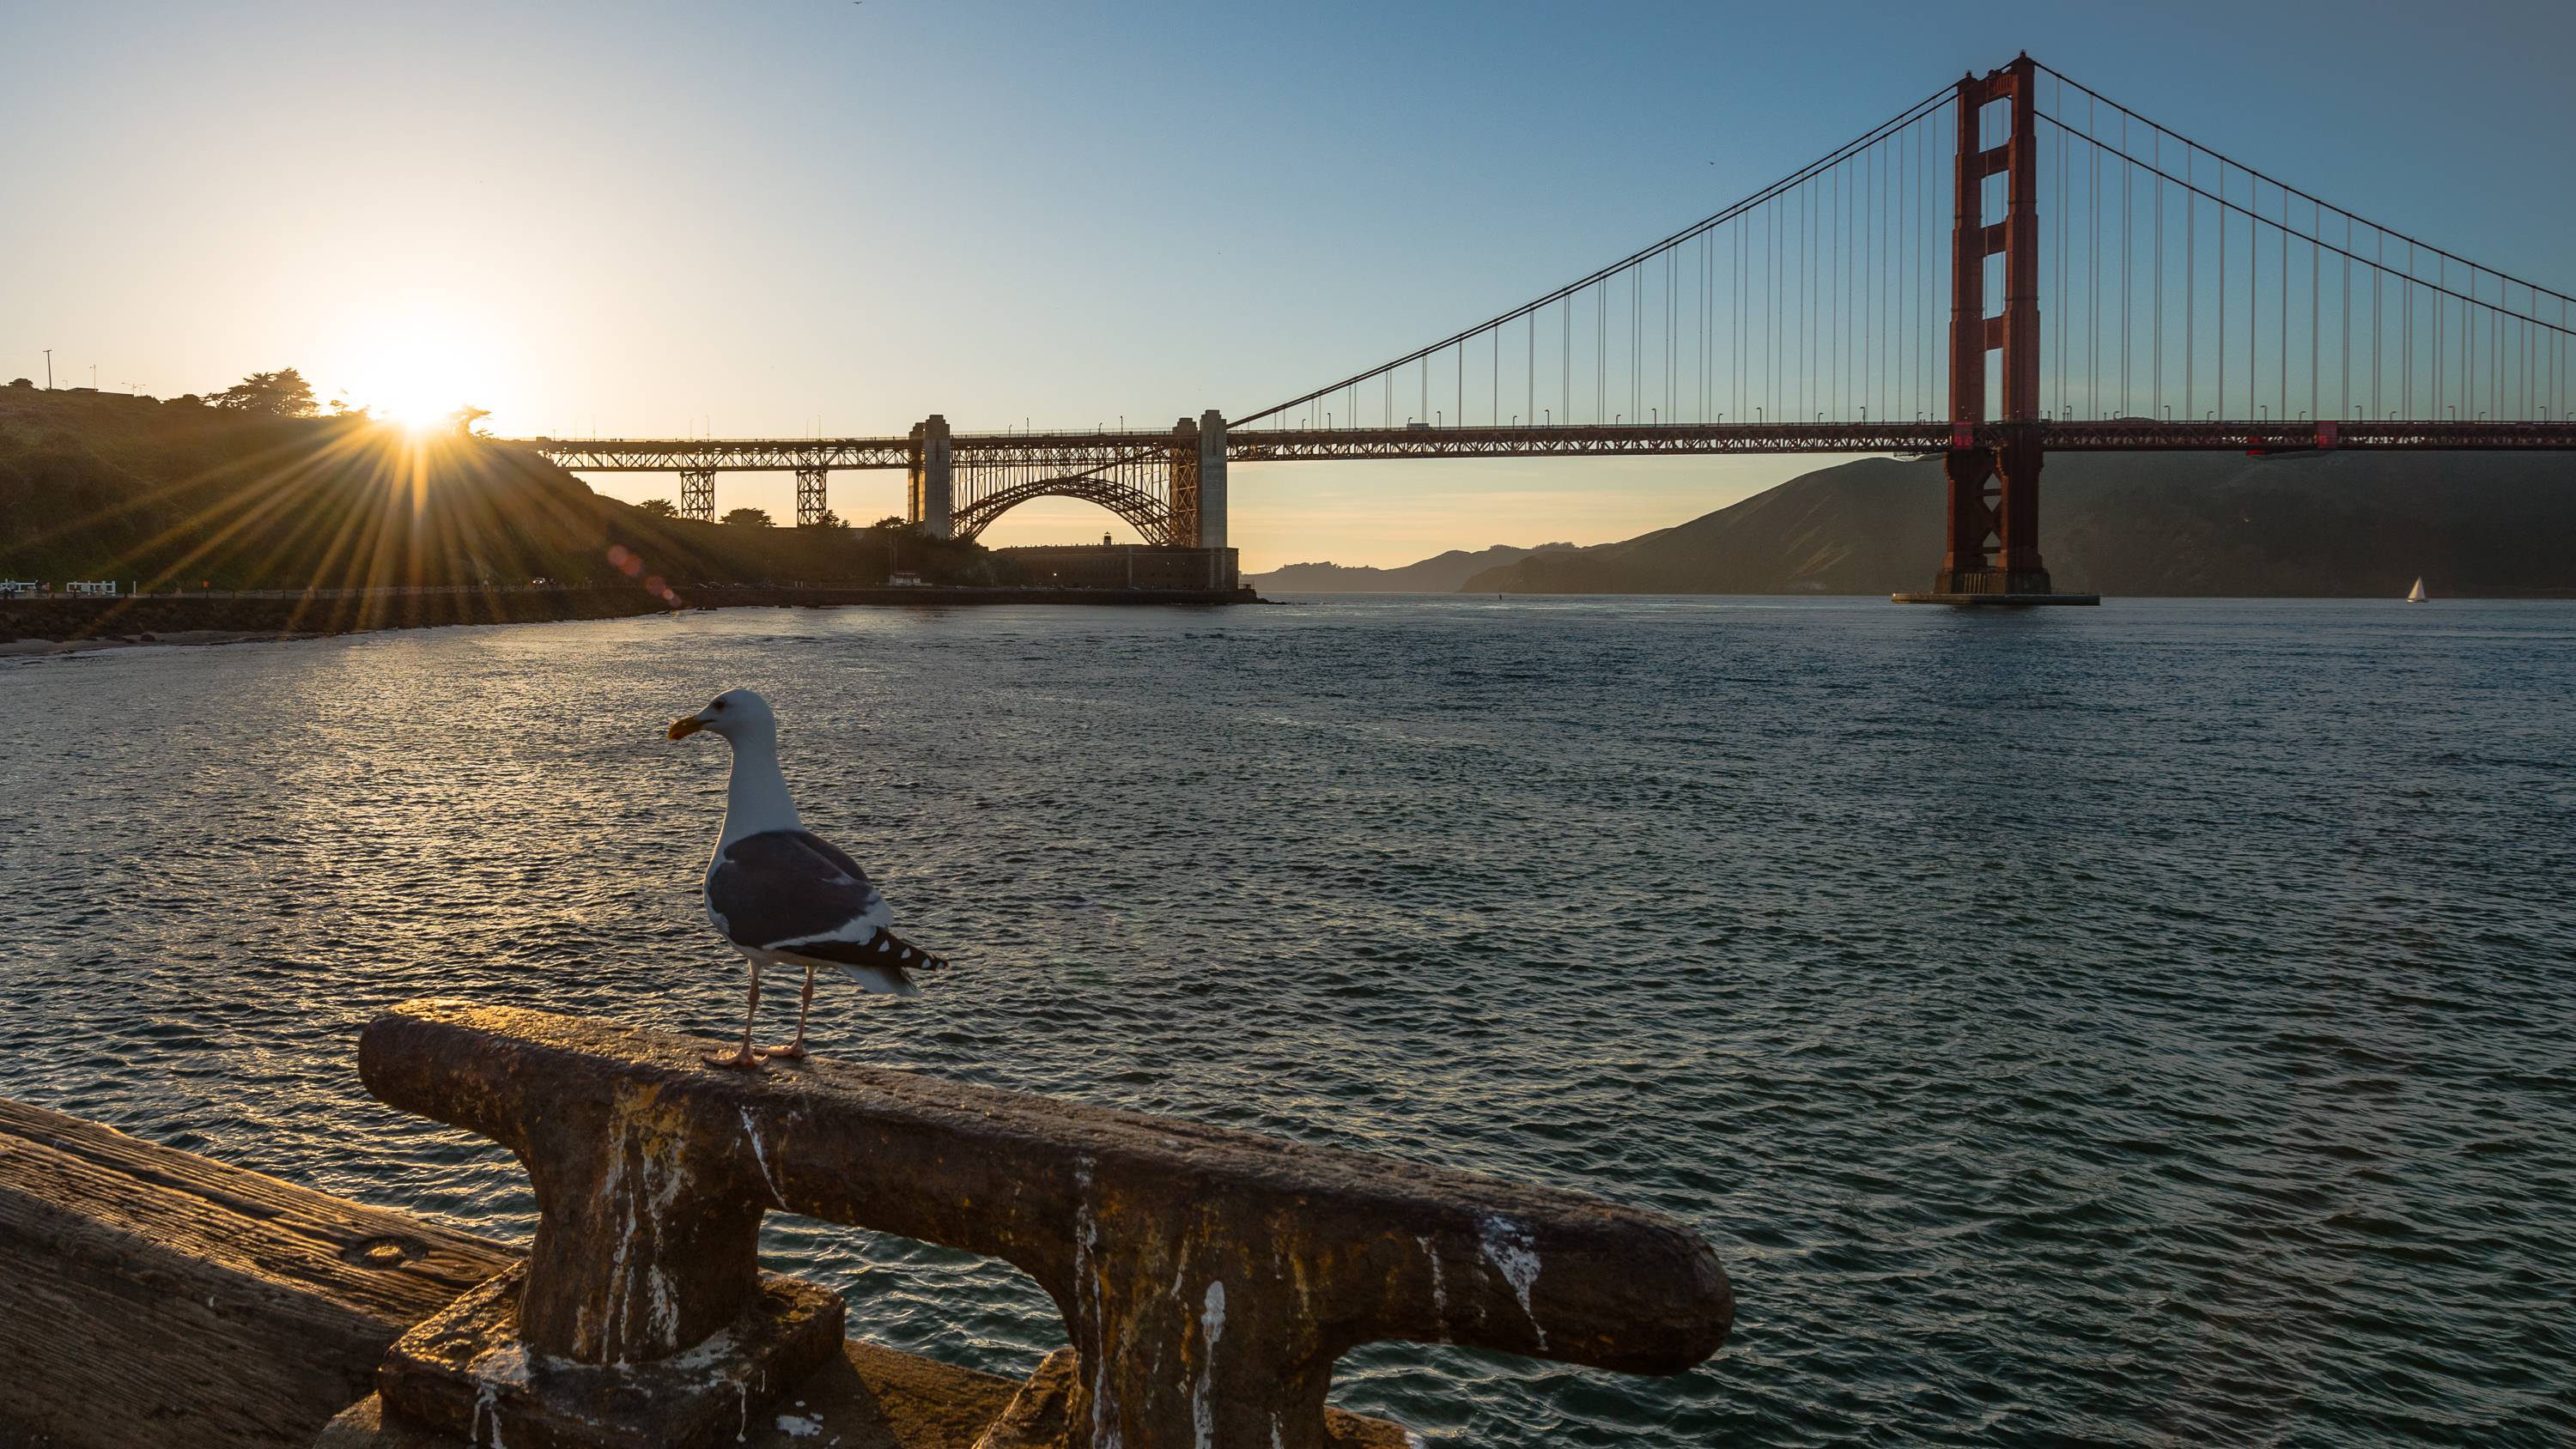 Обои Golden Gate Калифорния Сан-Франциско на рабочий стол